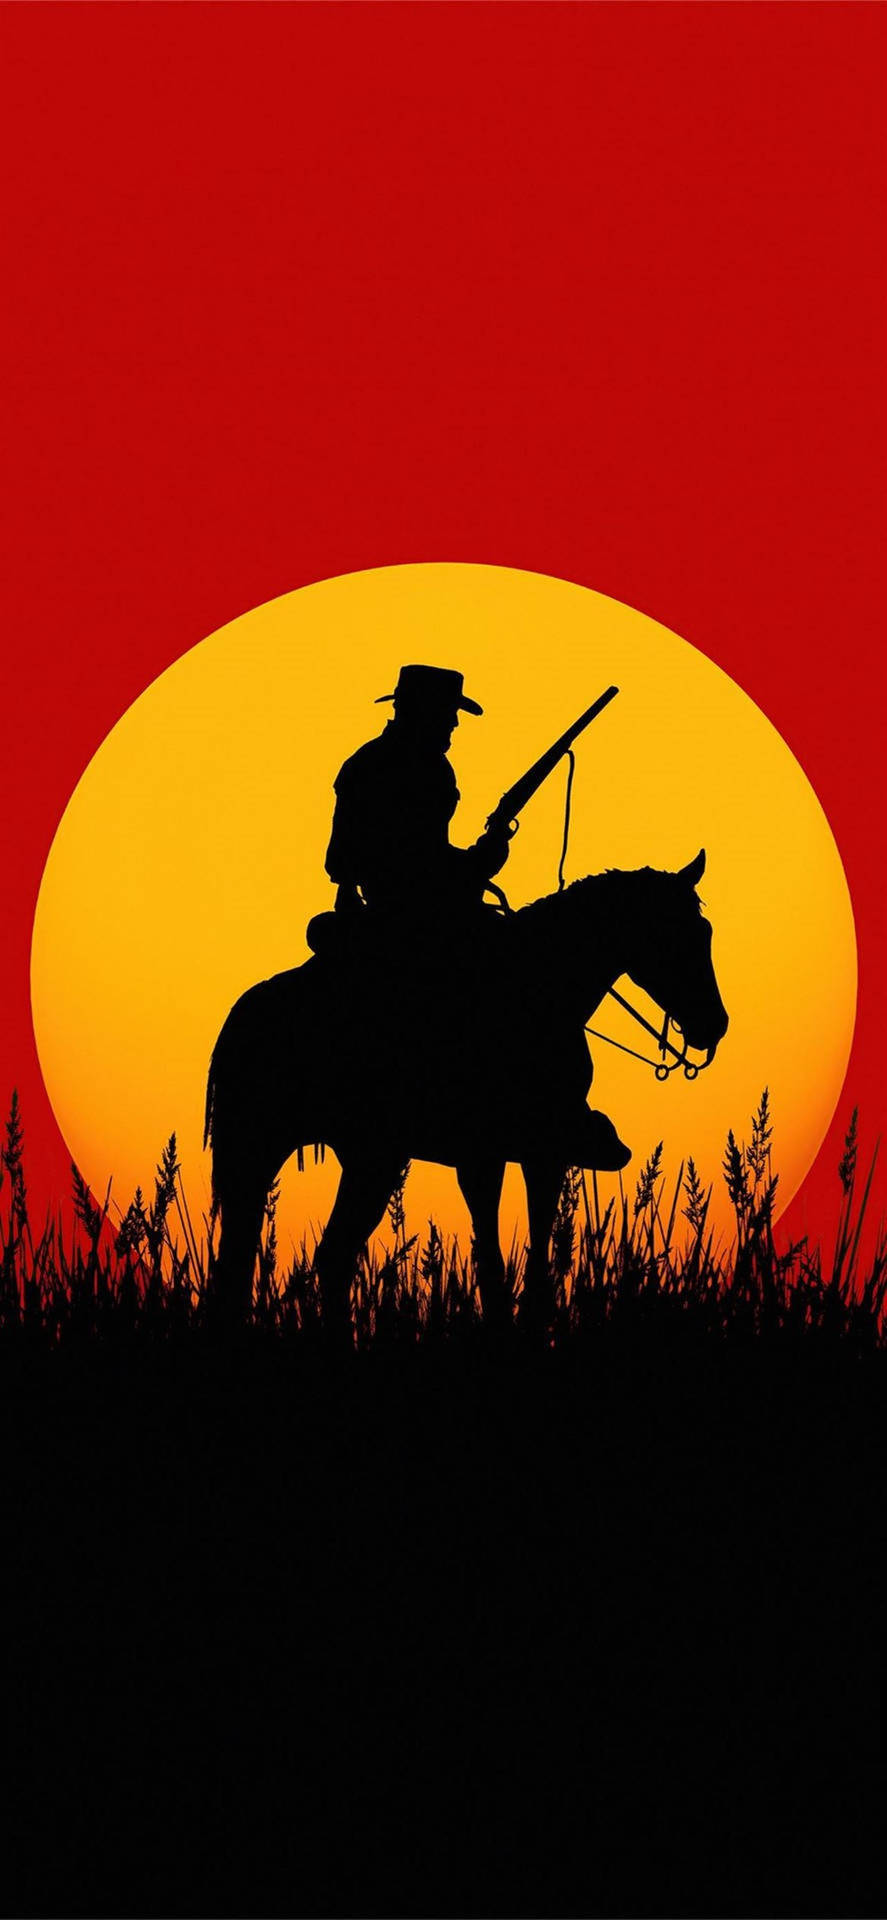 Udforsk det Vilde Vesten og Tag imod de Uendelige Horizonter med Hest Red Dead Redemption 2 Wallpaper